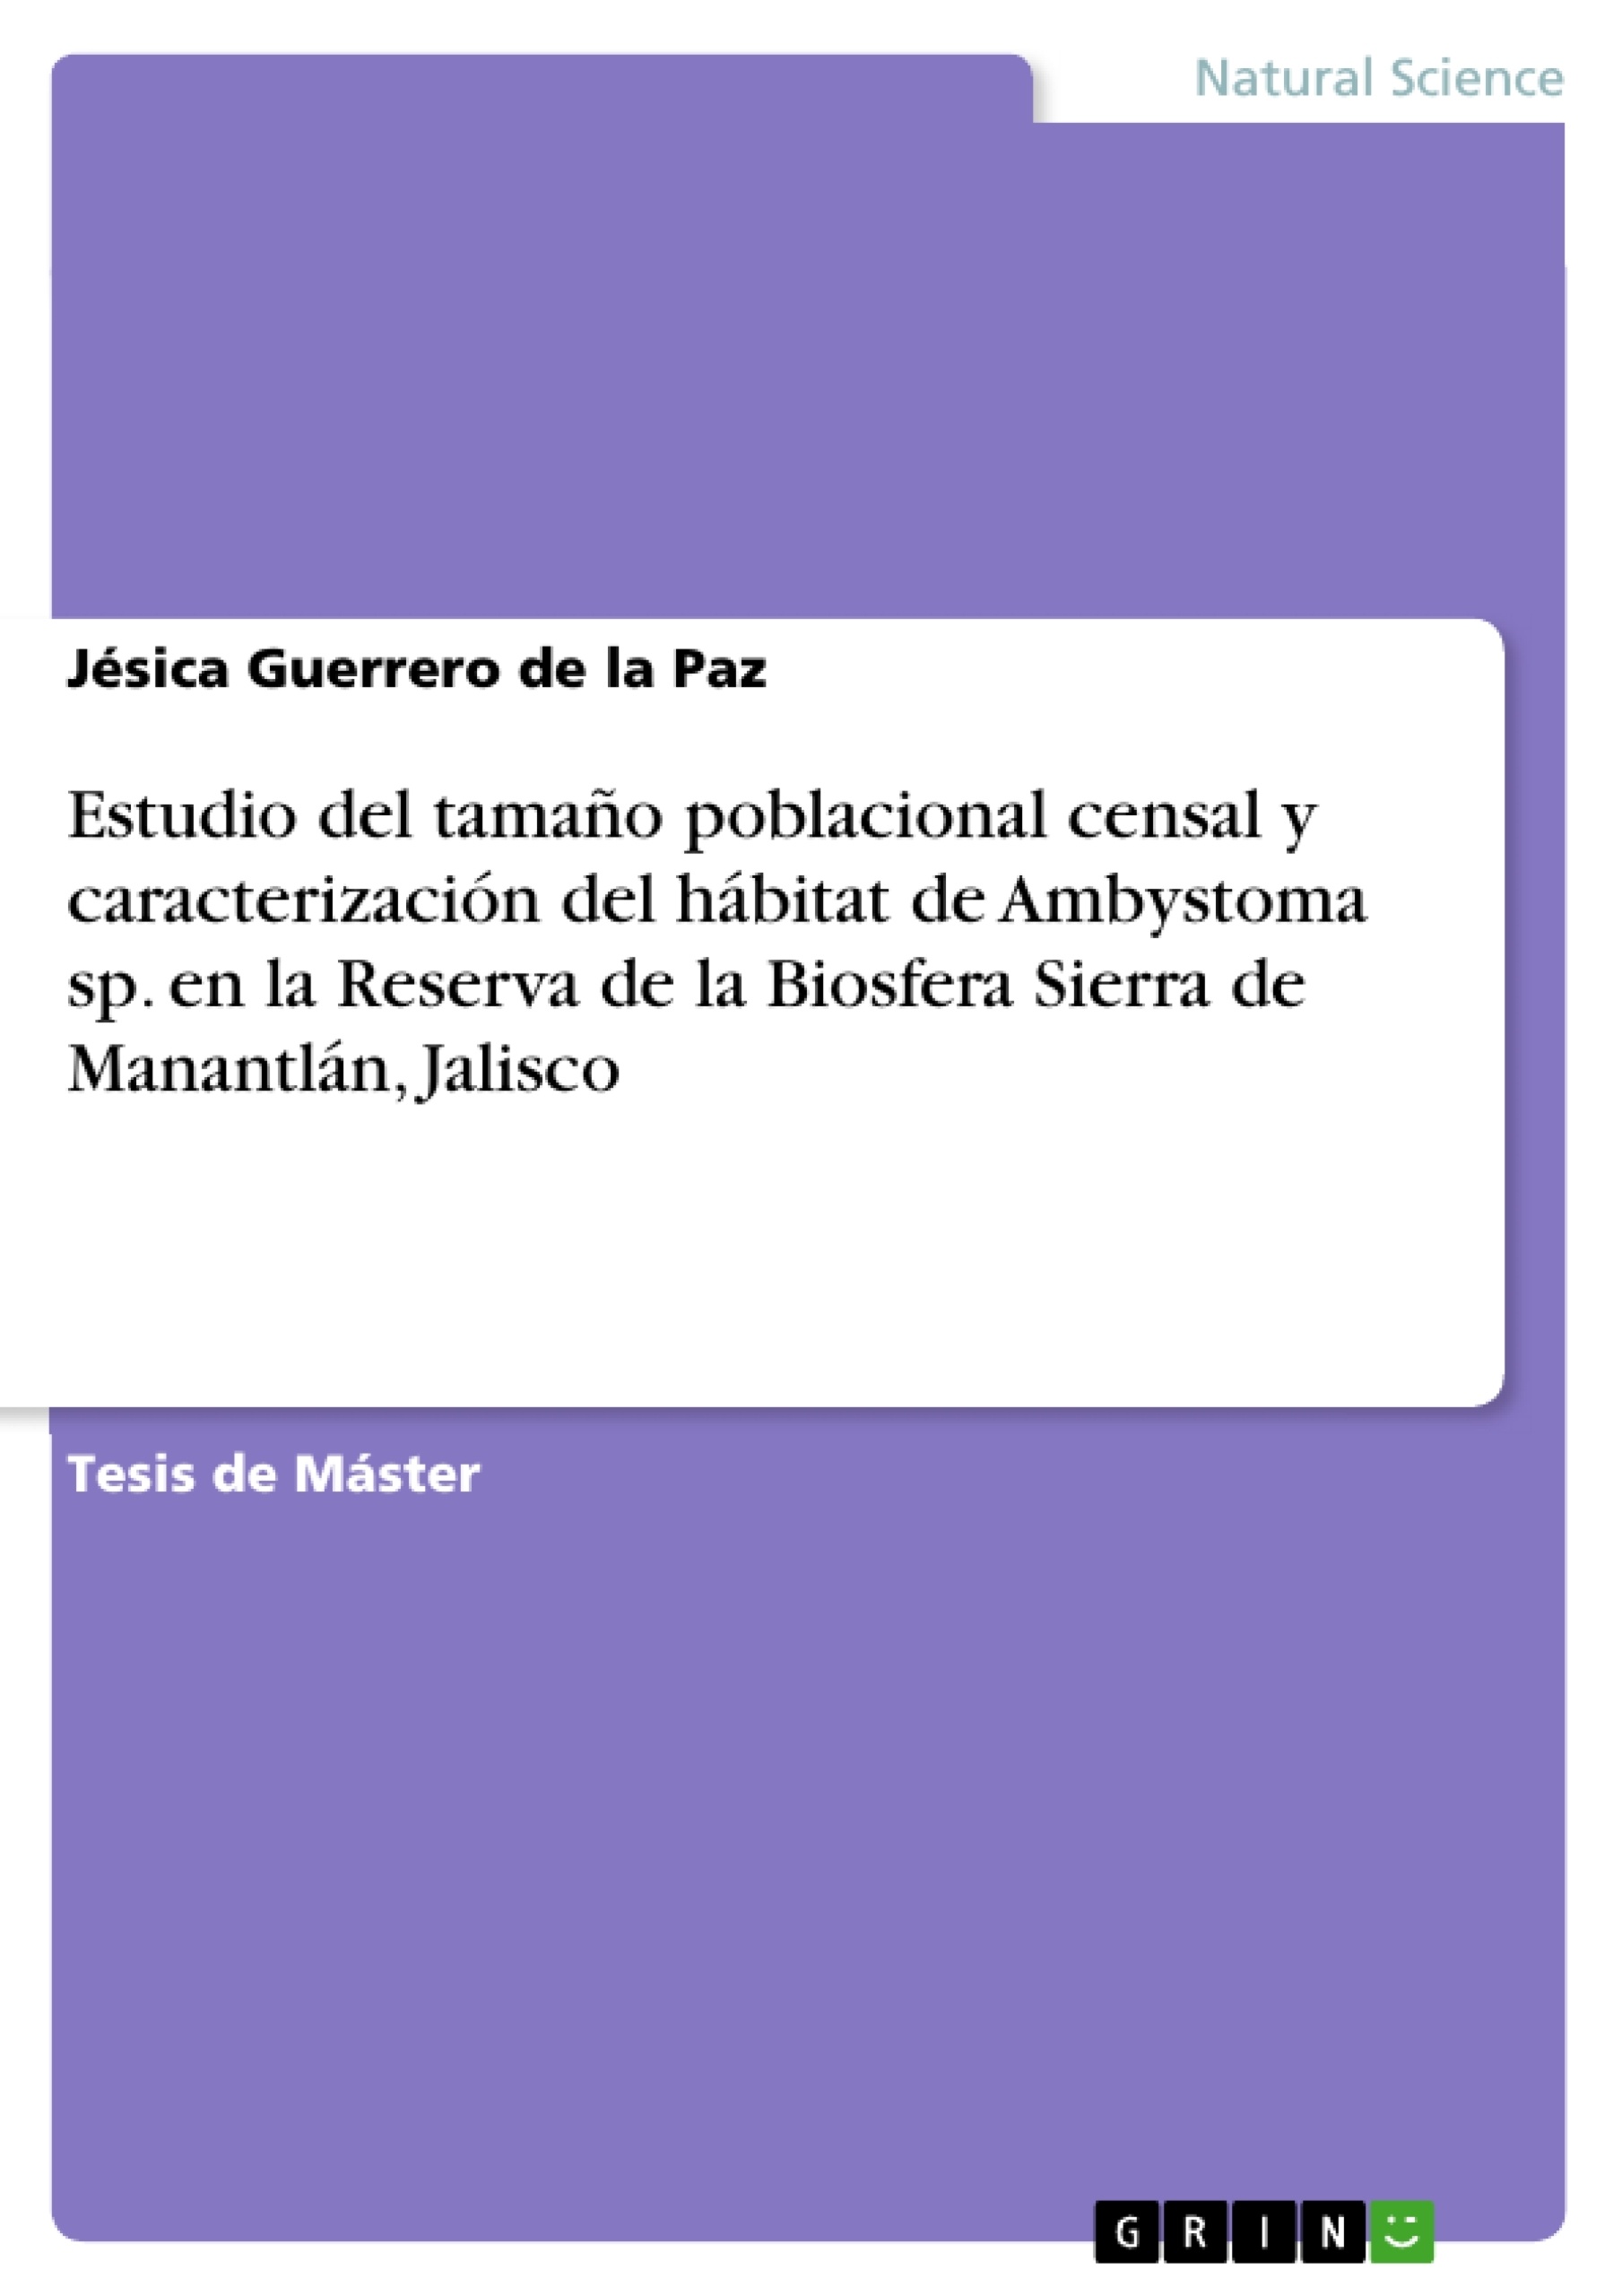 Título: Estudio del tamaño poblacional censal y caracterización del hábitat de Ambystoma sp. en la Reserva de la Biosfera Sierra de Manantlán, Jalisco